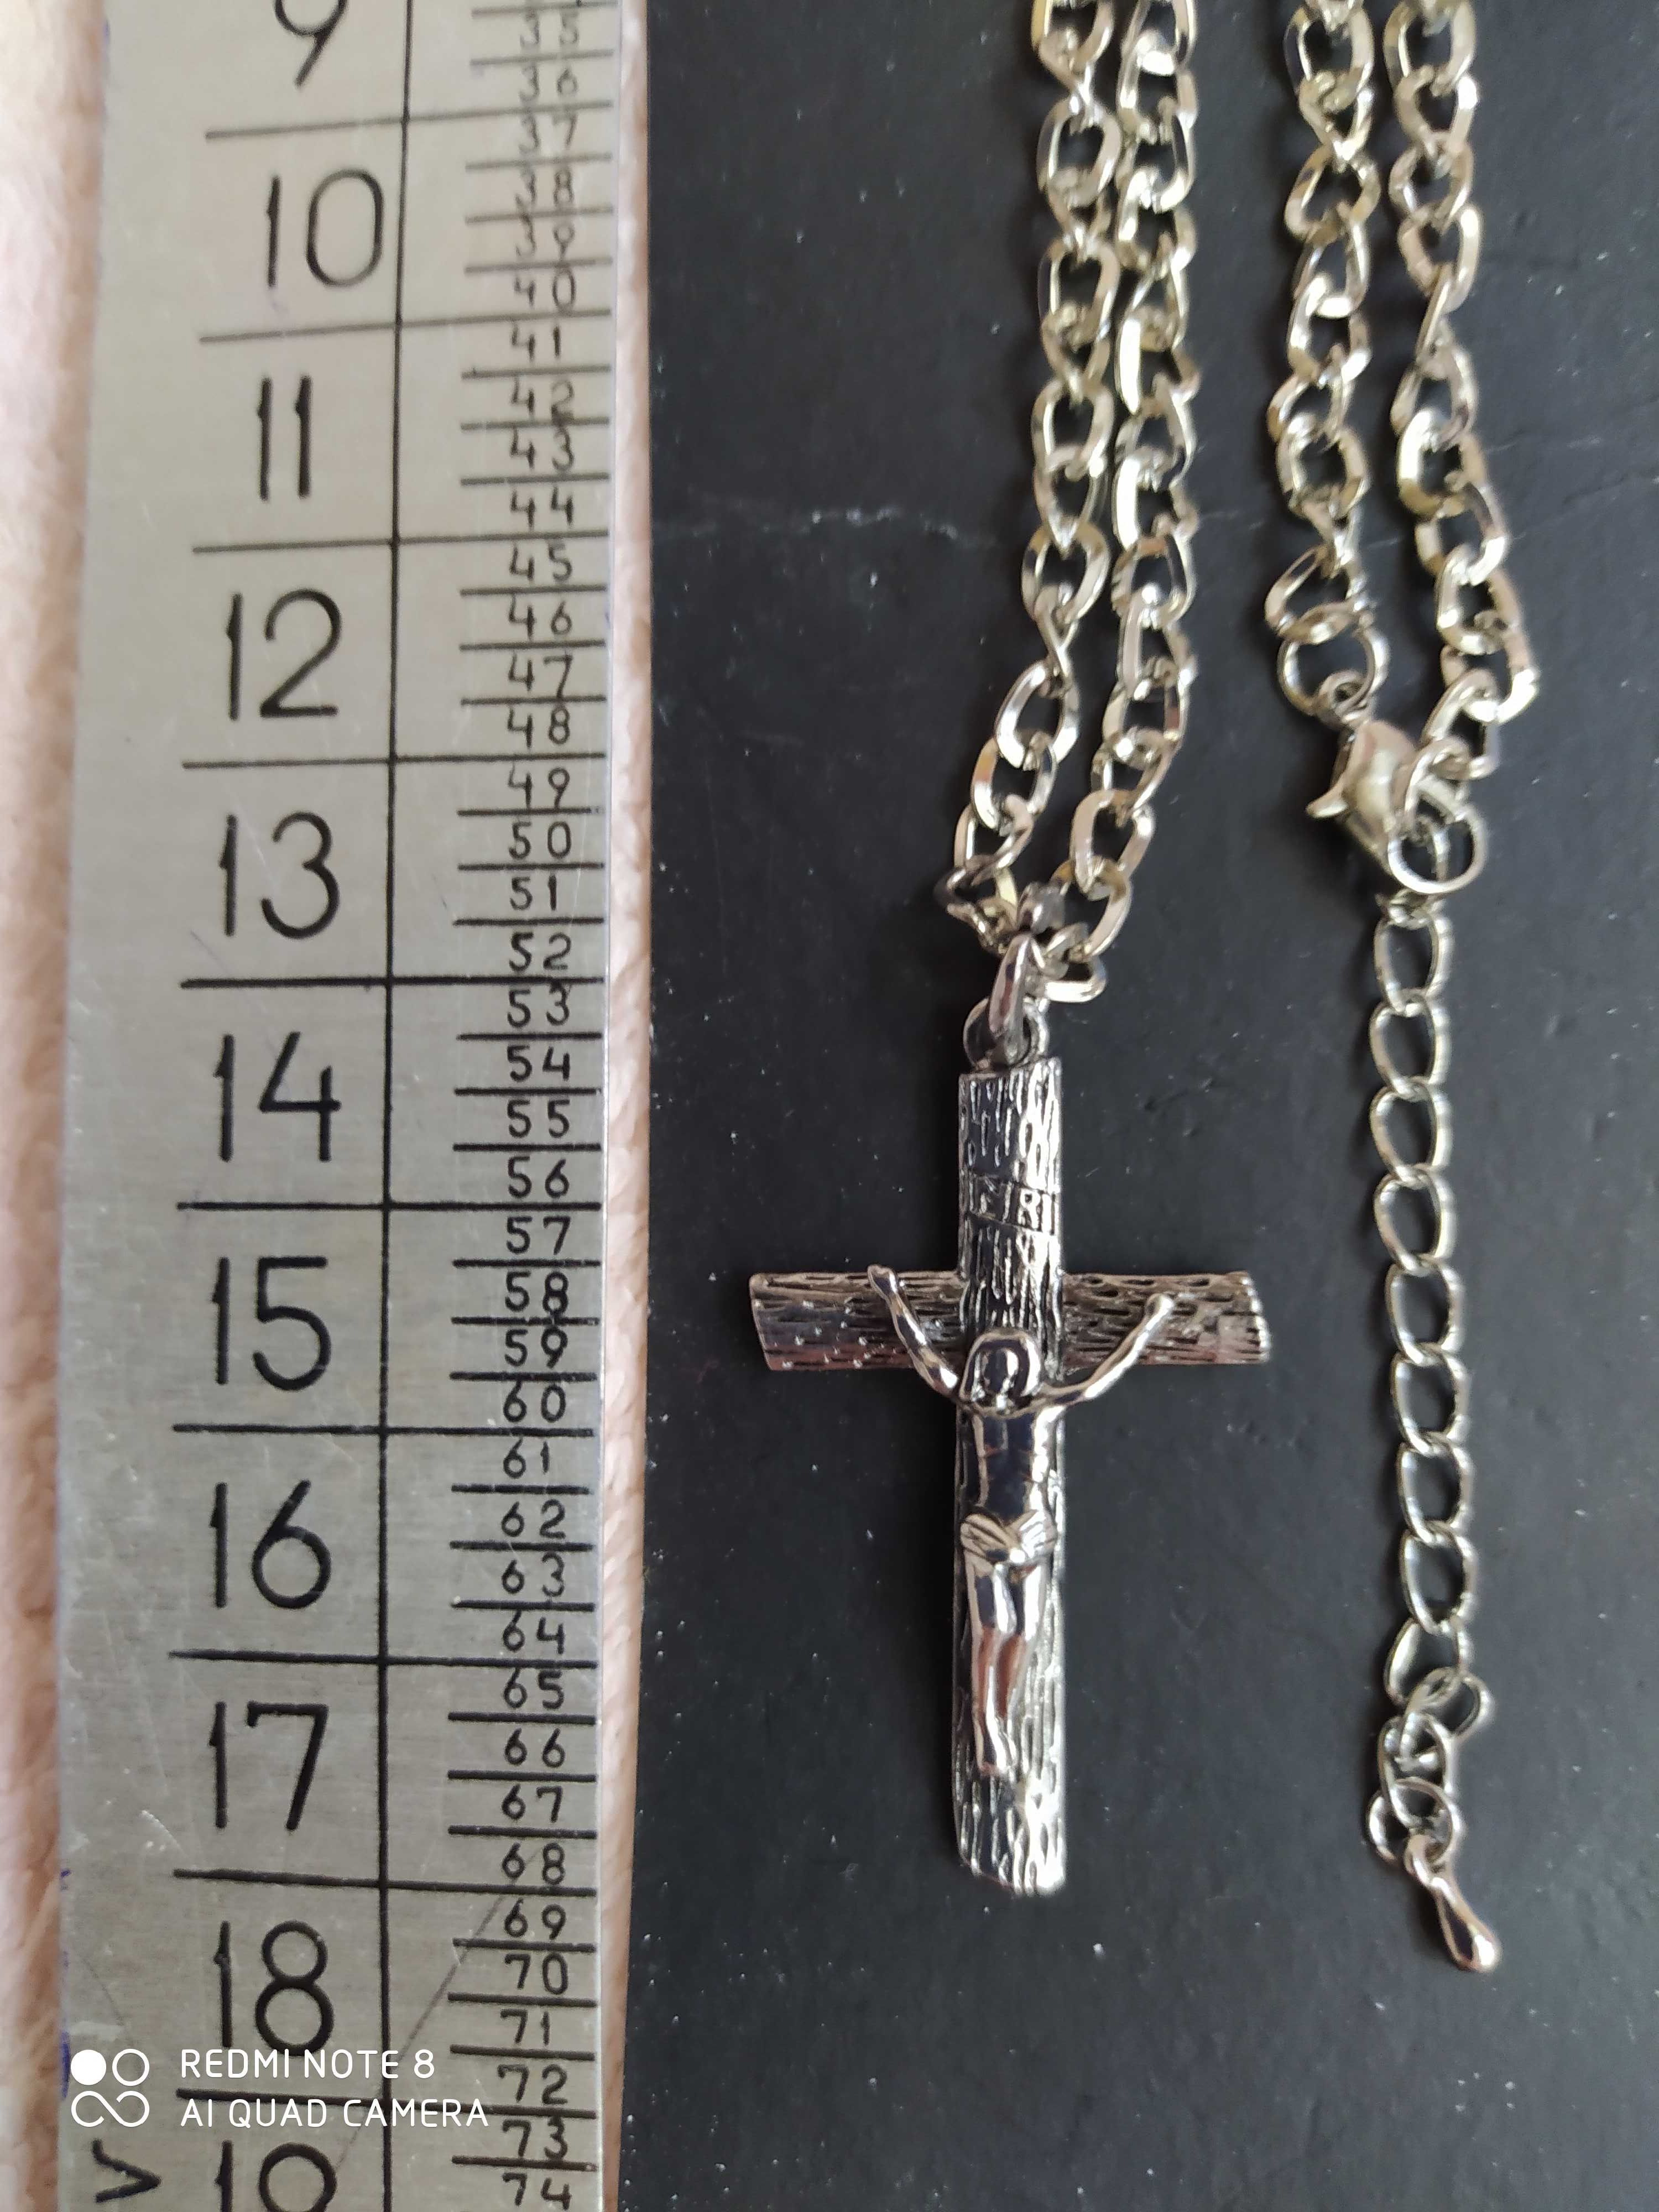 Кулон Крест с Распятием на цепочке бижутерия